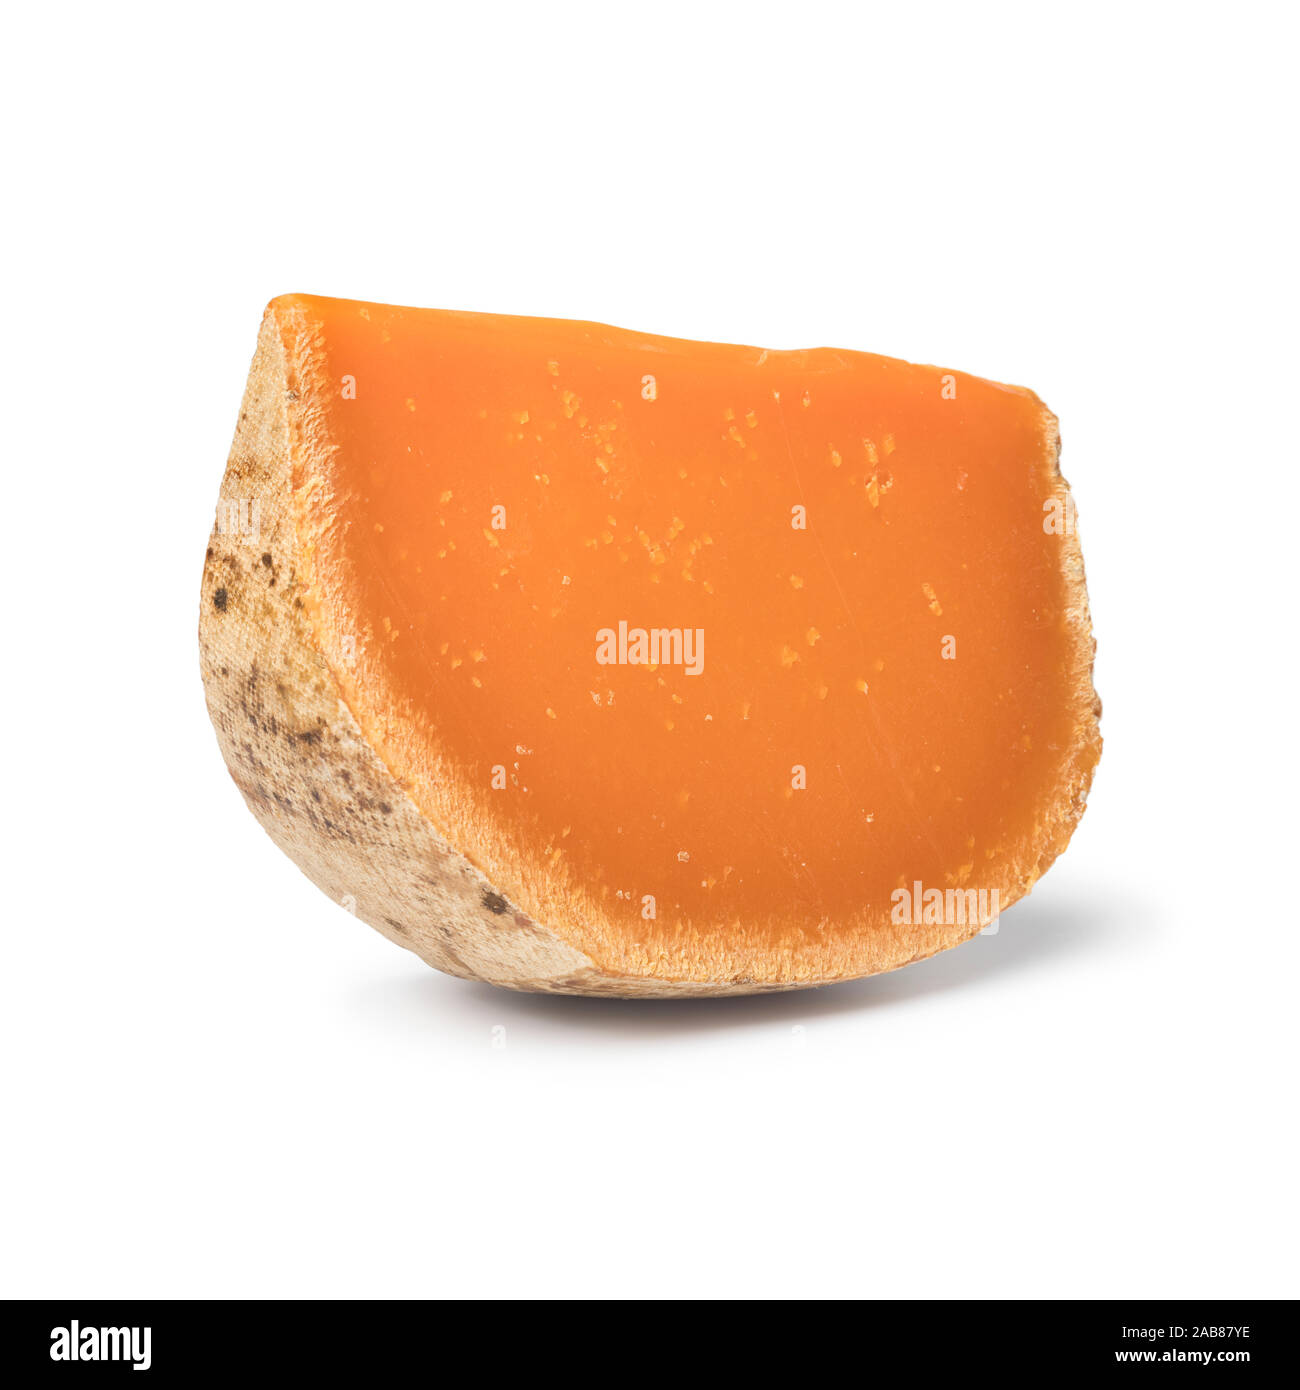 Keil der Orange Französische Mimolette Käse auf weißem Hintergrund Stockfoto